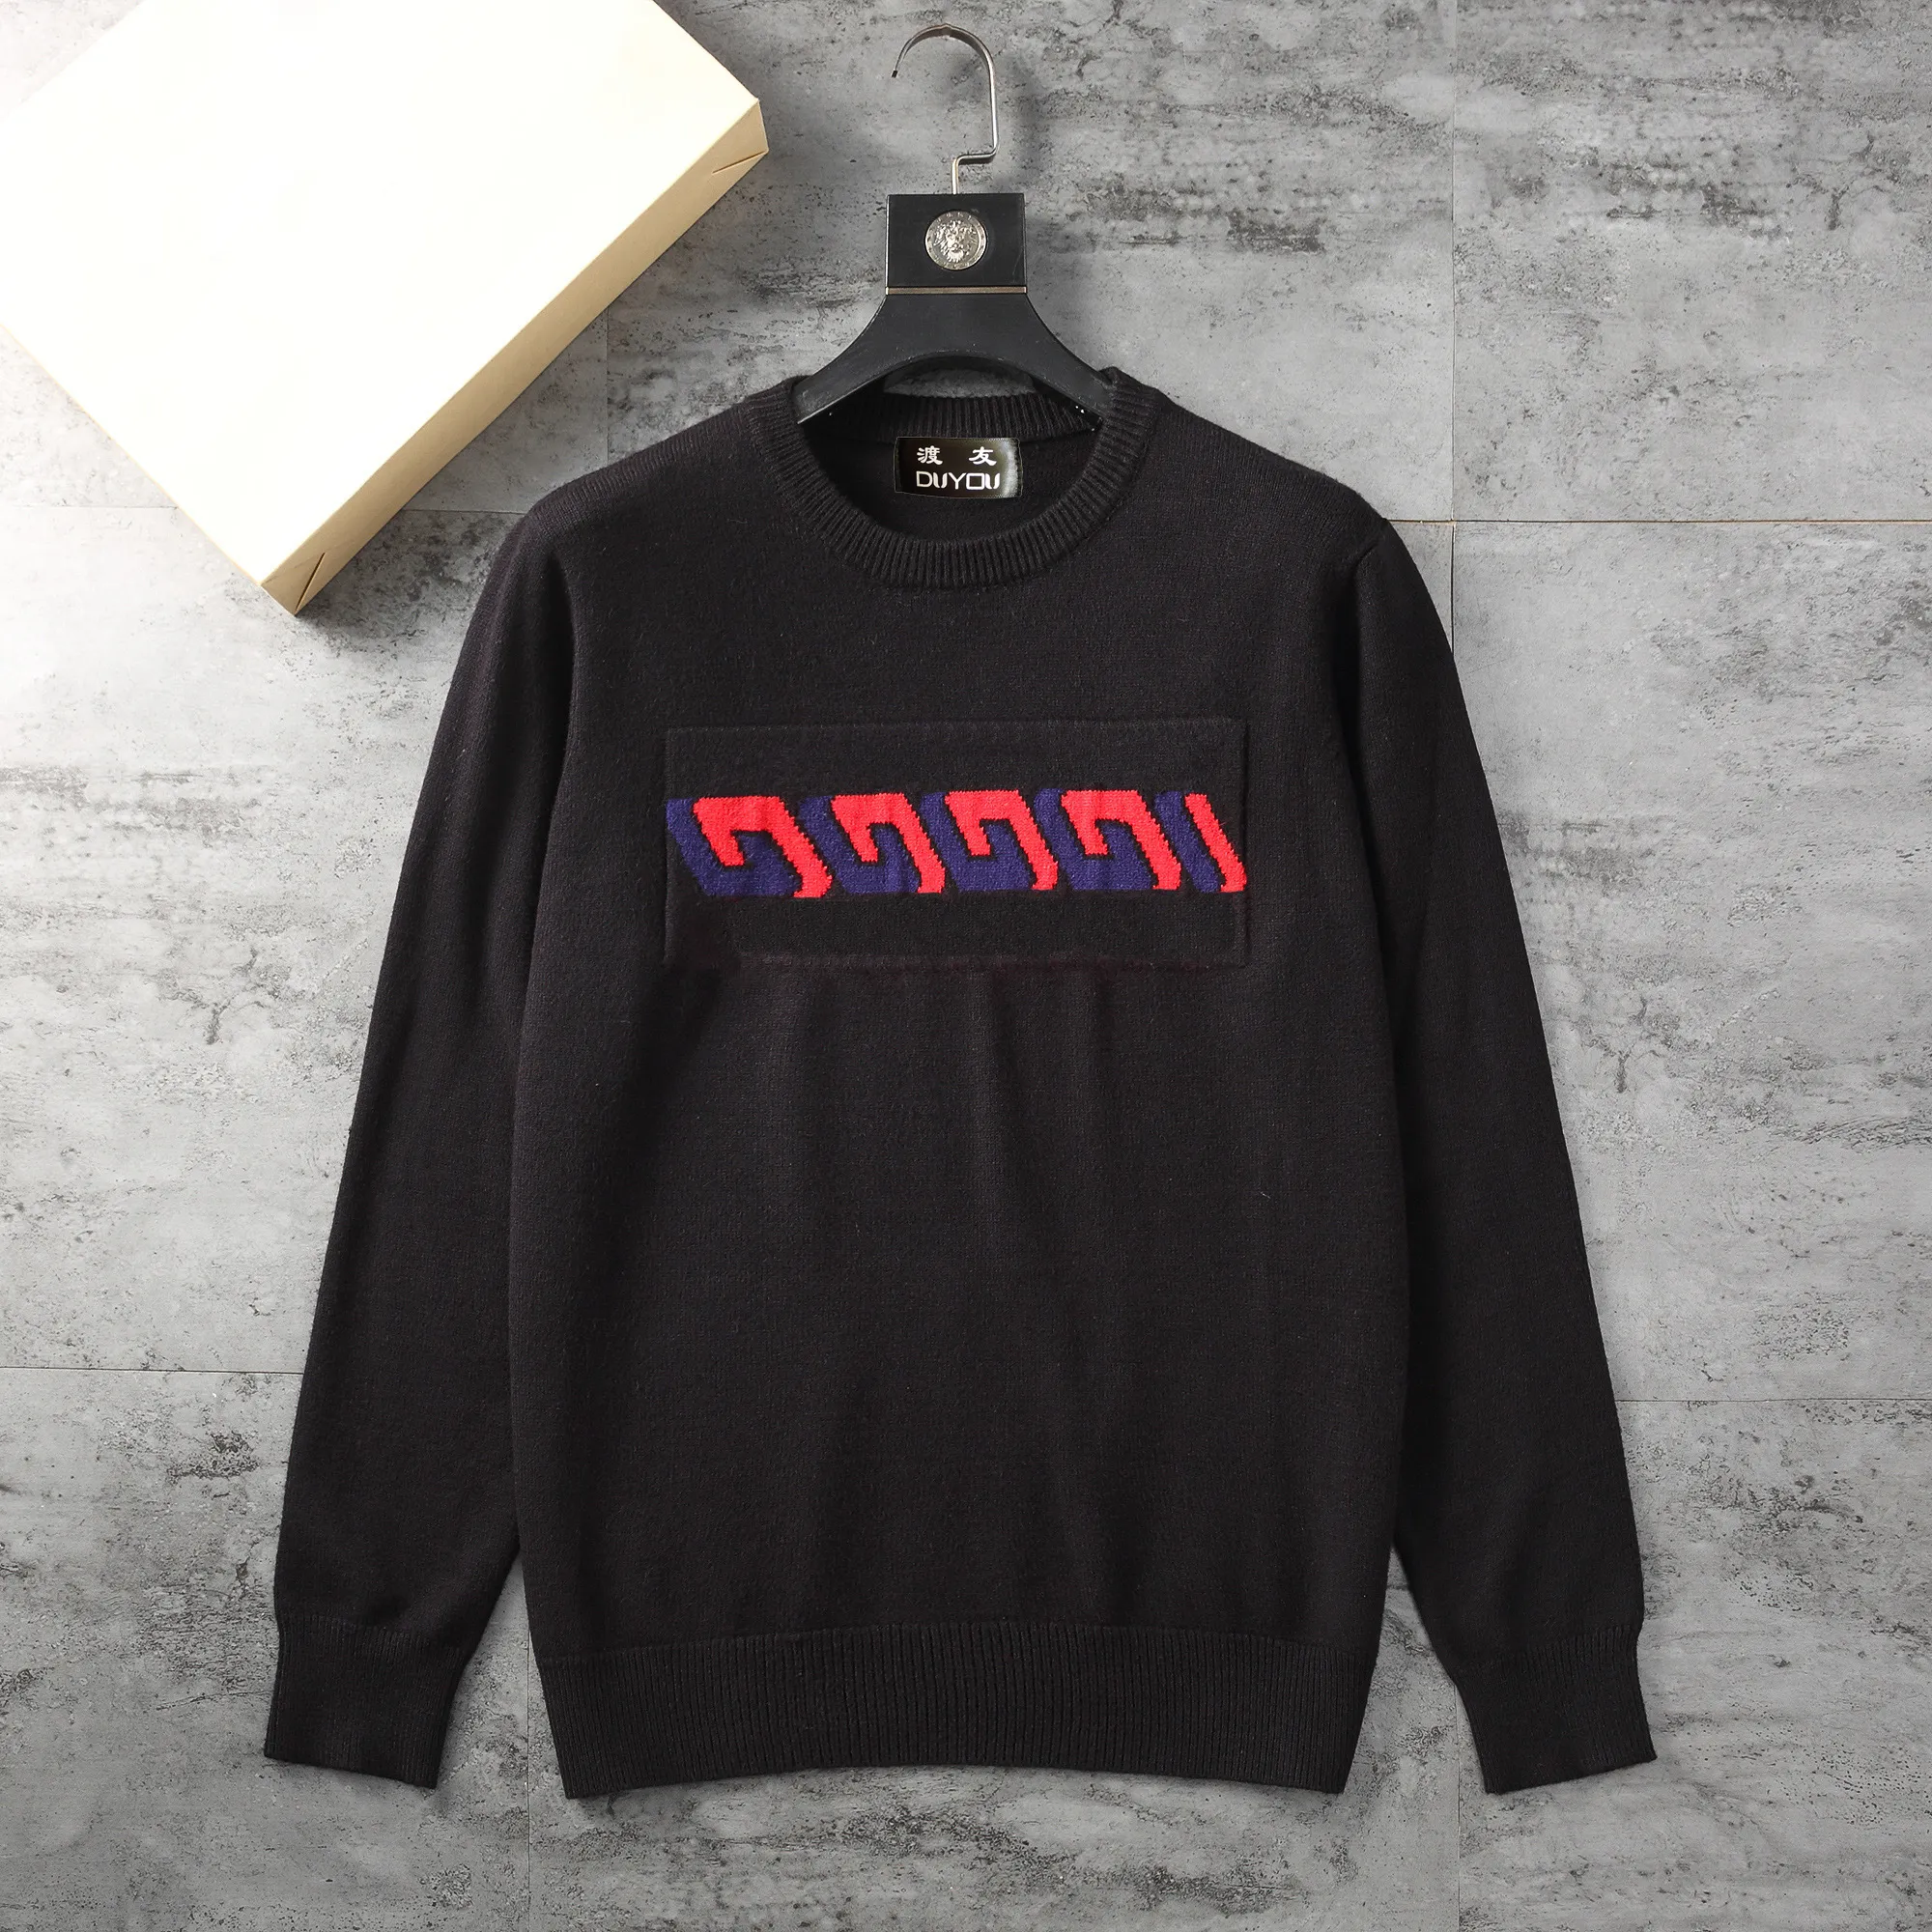 Duyou 라운드 넥 스웨터 니트 스웨터 남성 고딕 편지 인쇄 인쇄 풀오버하라 주쿠면 스웨터 84536